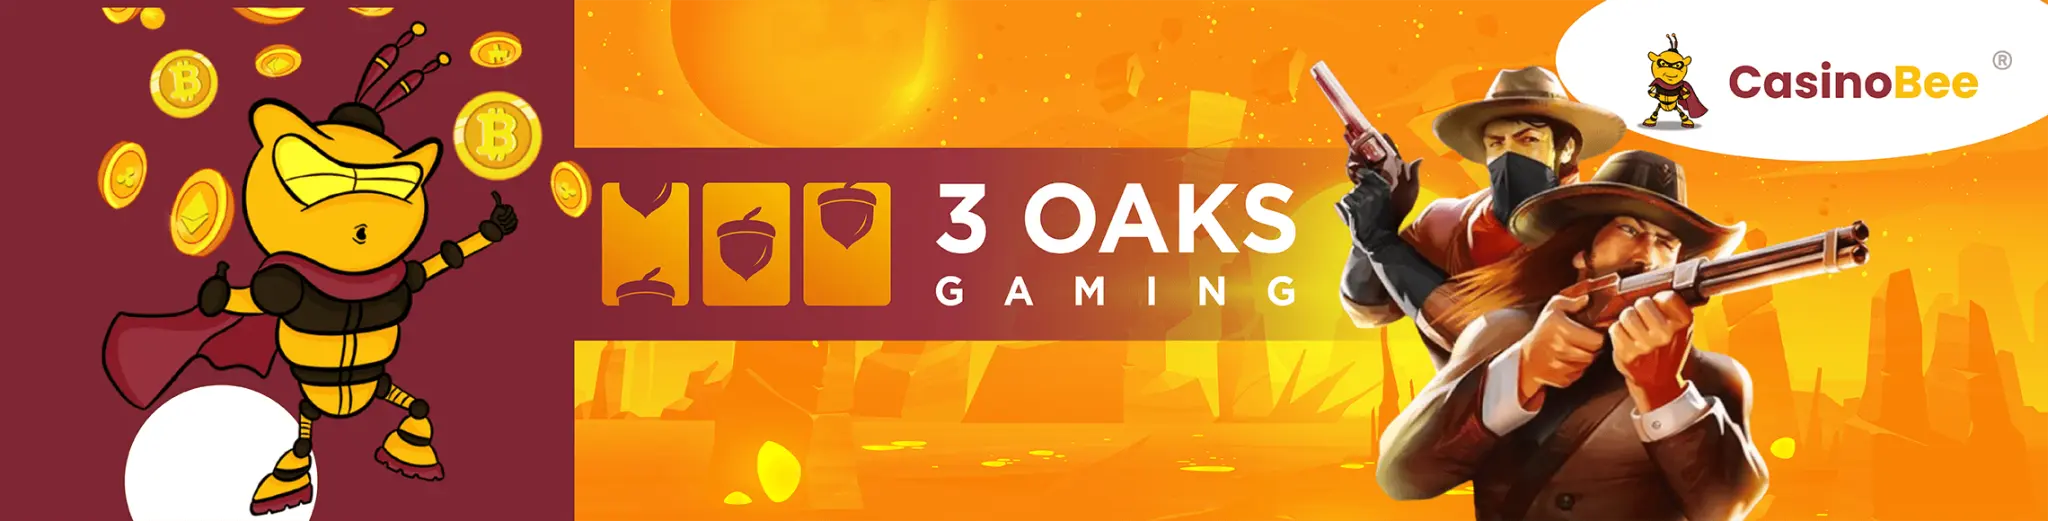 3 oaks gaming casino en linea